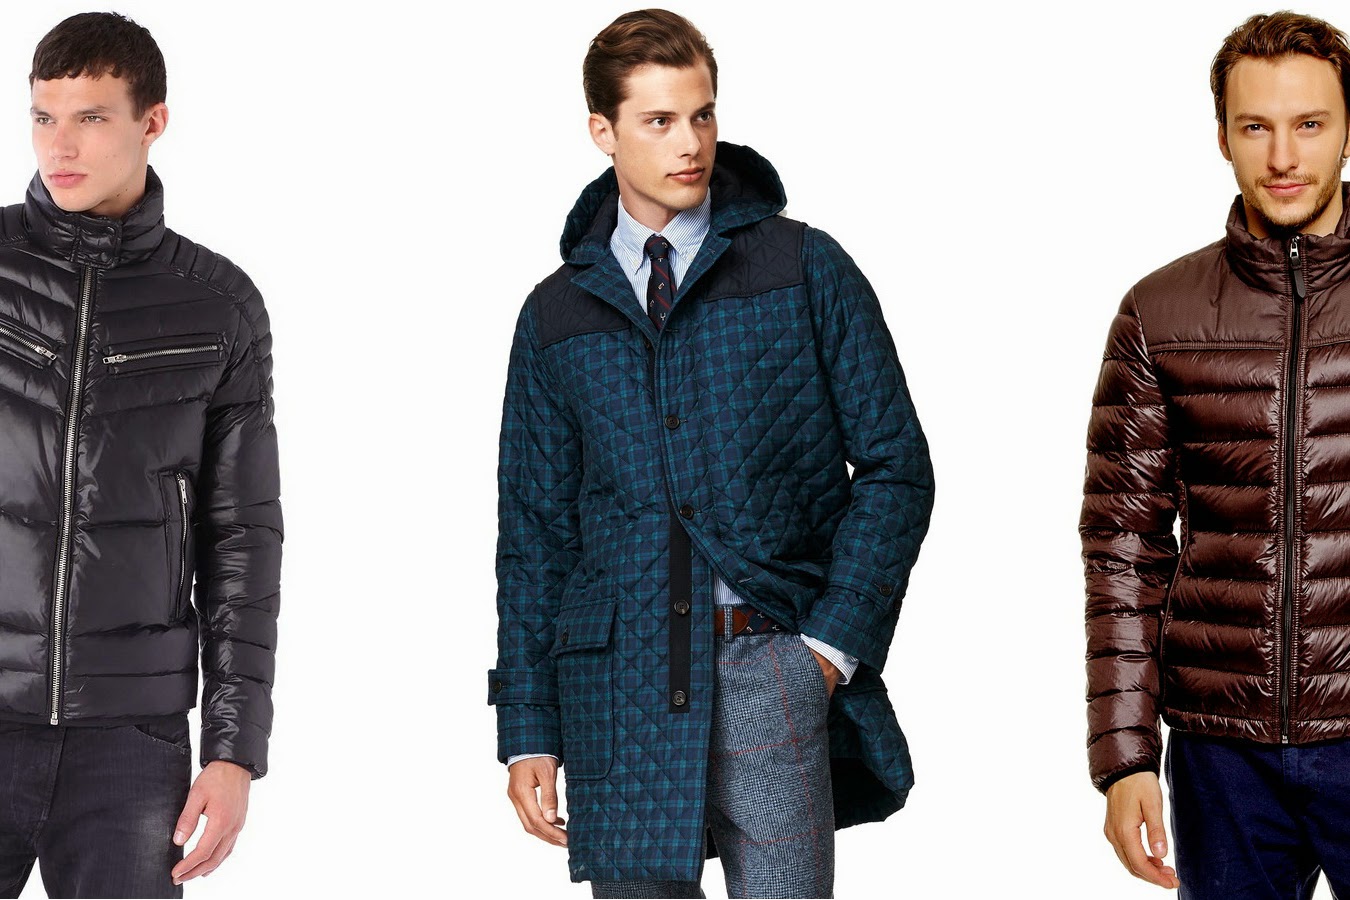 Мужские куртки: виды и самые популярные фасоны Из каких материалов шьют утепленные и легкие летние куртки Как правильно выбрать короткие и длинные модели для мужчин